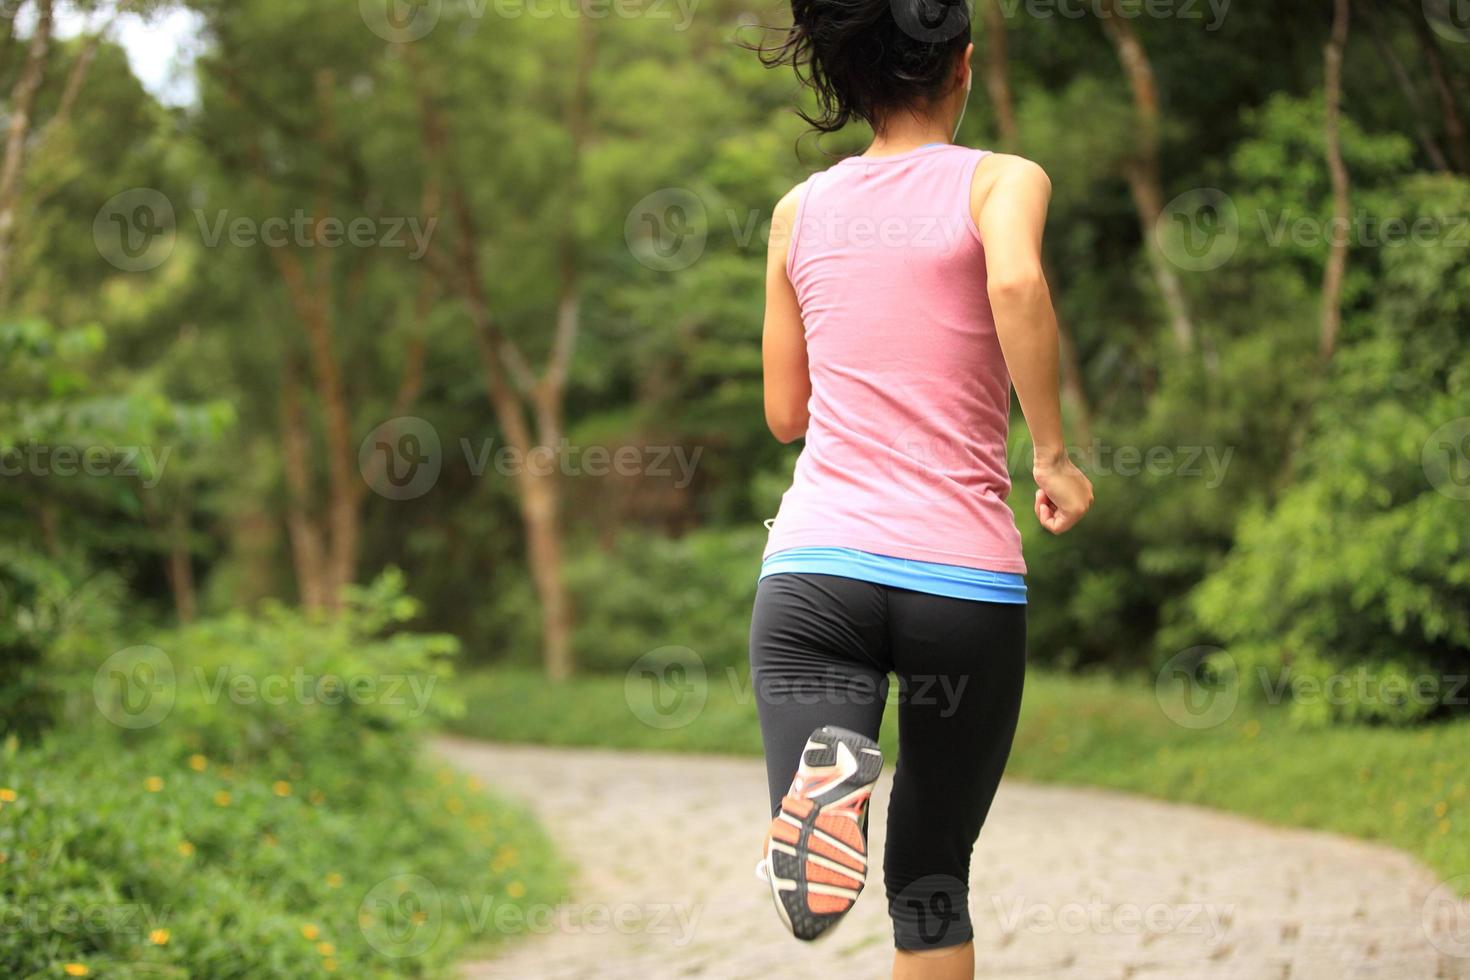 atleta corredor corriendo en pista forestal. foto